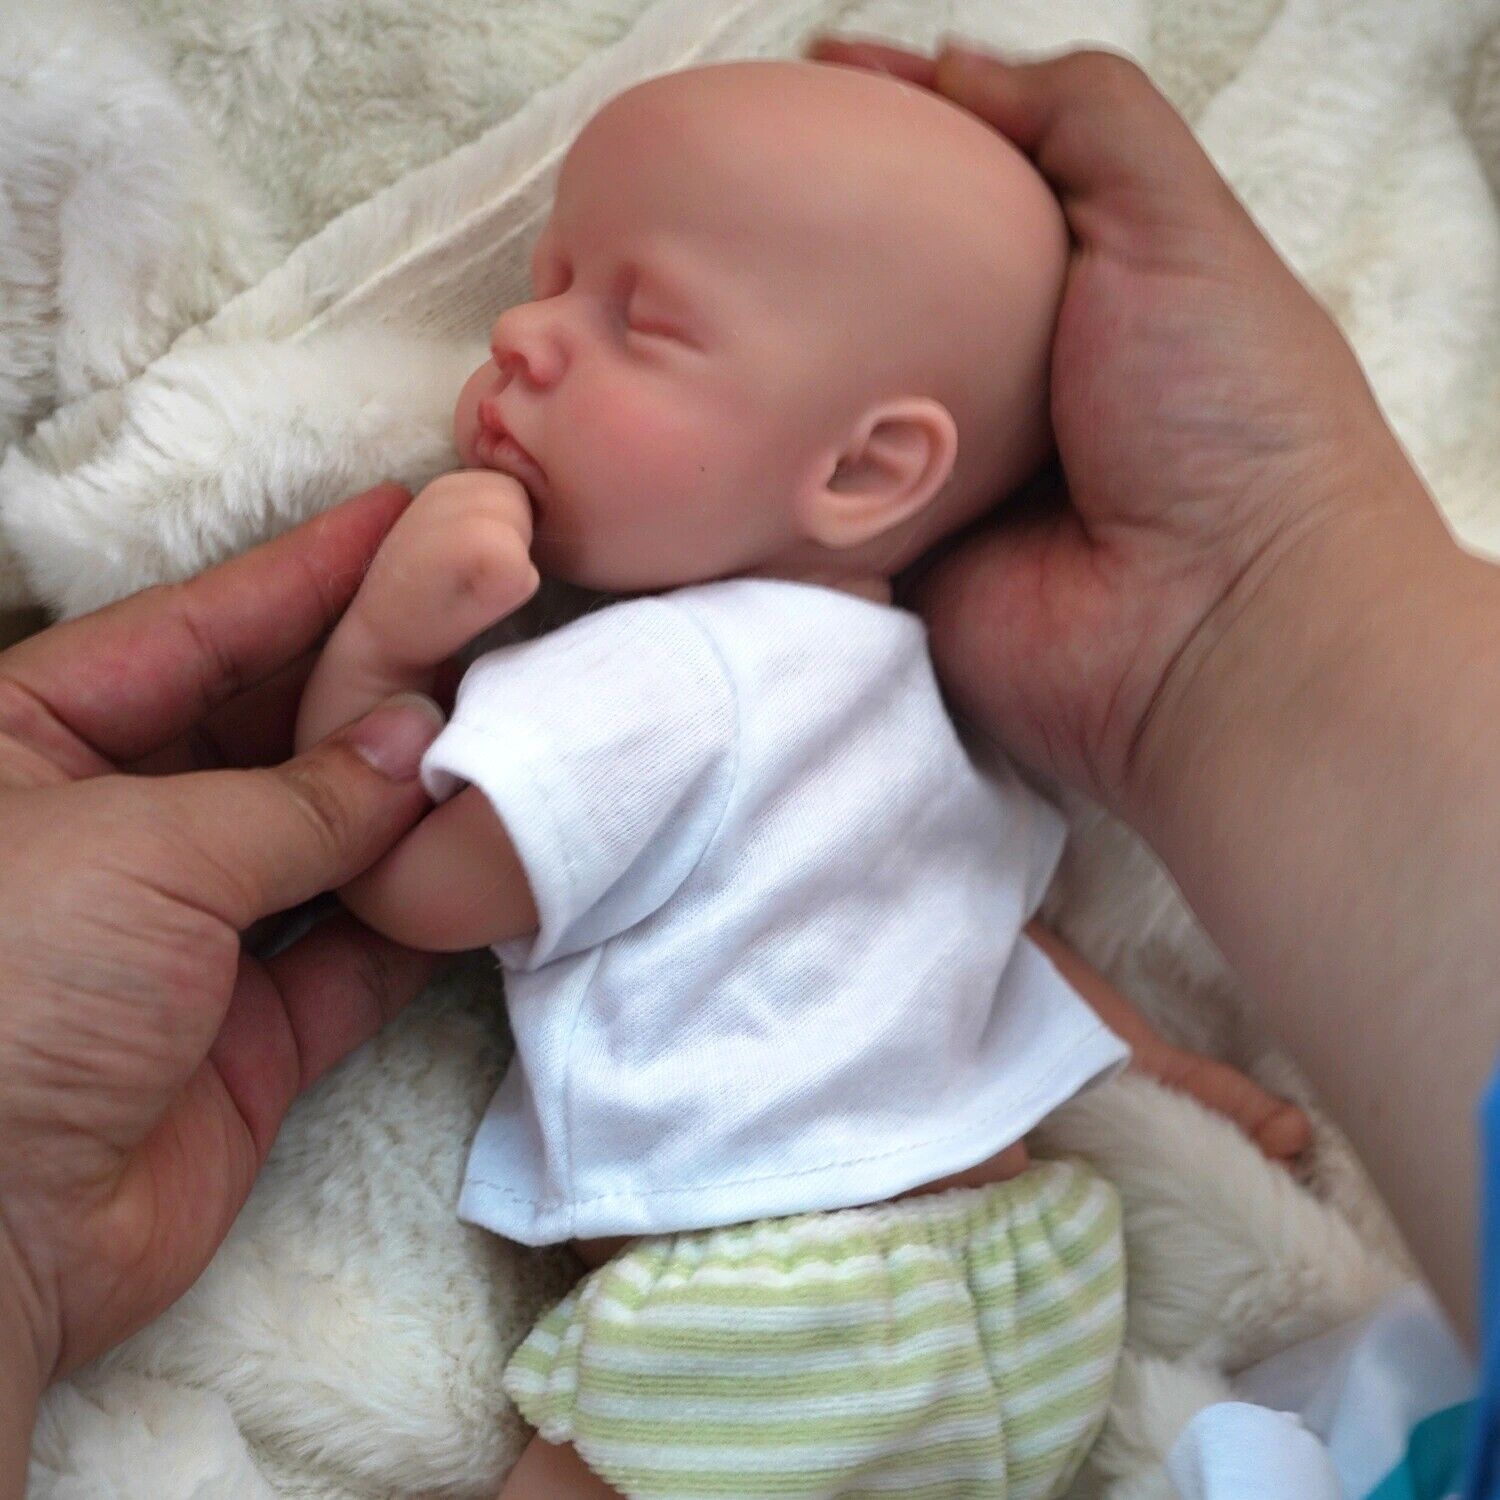 Baby Boy Doll Full Body Silicone Lifelike Reborn Newborn Doll Toy 12" Plus Gift Unbranded - фотография #3